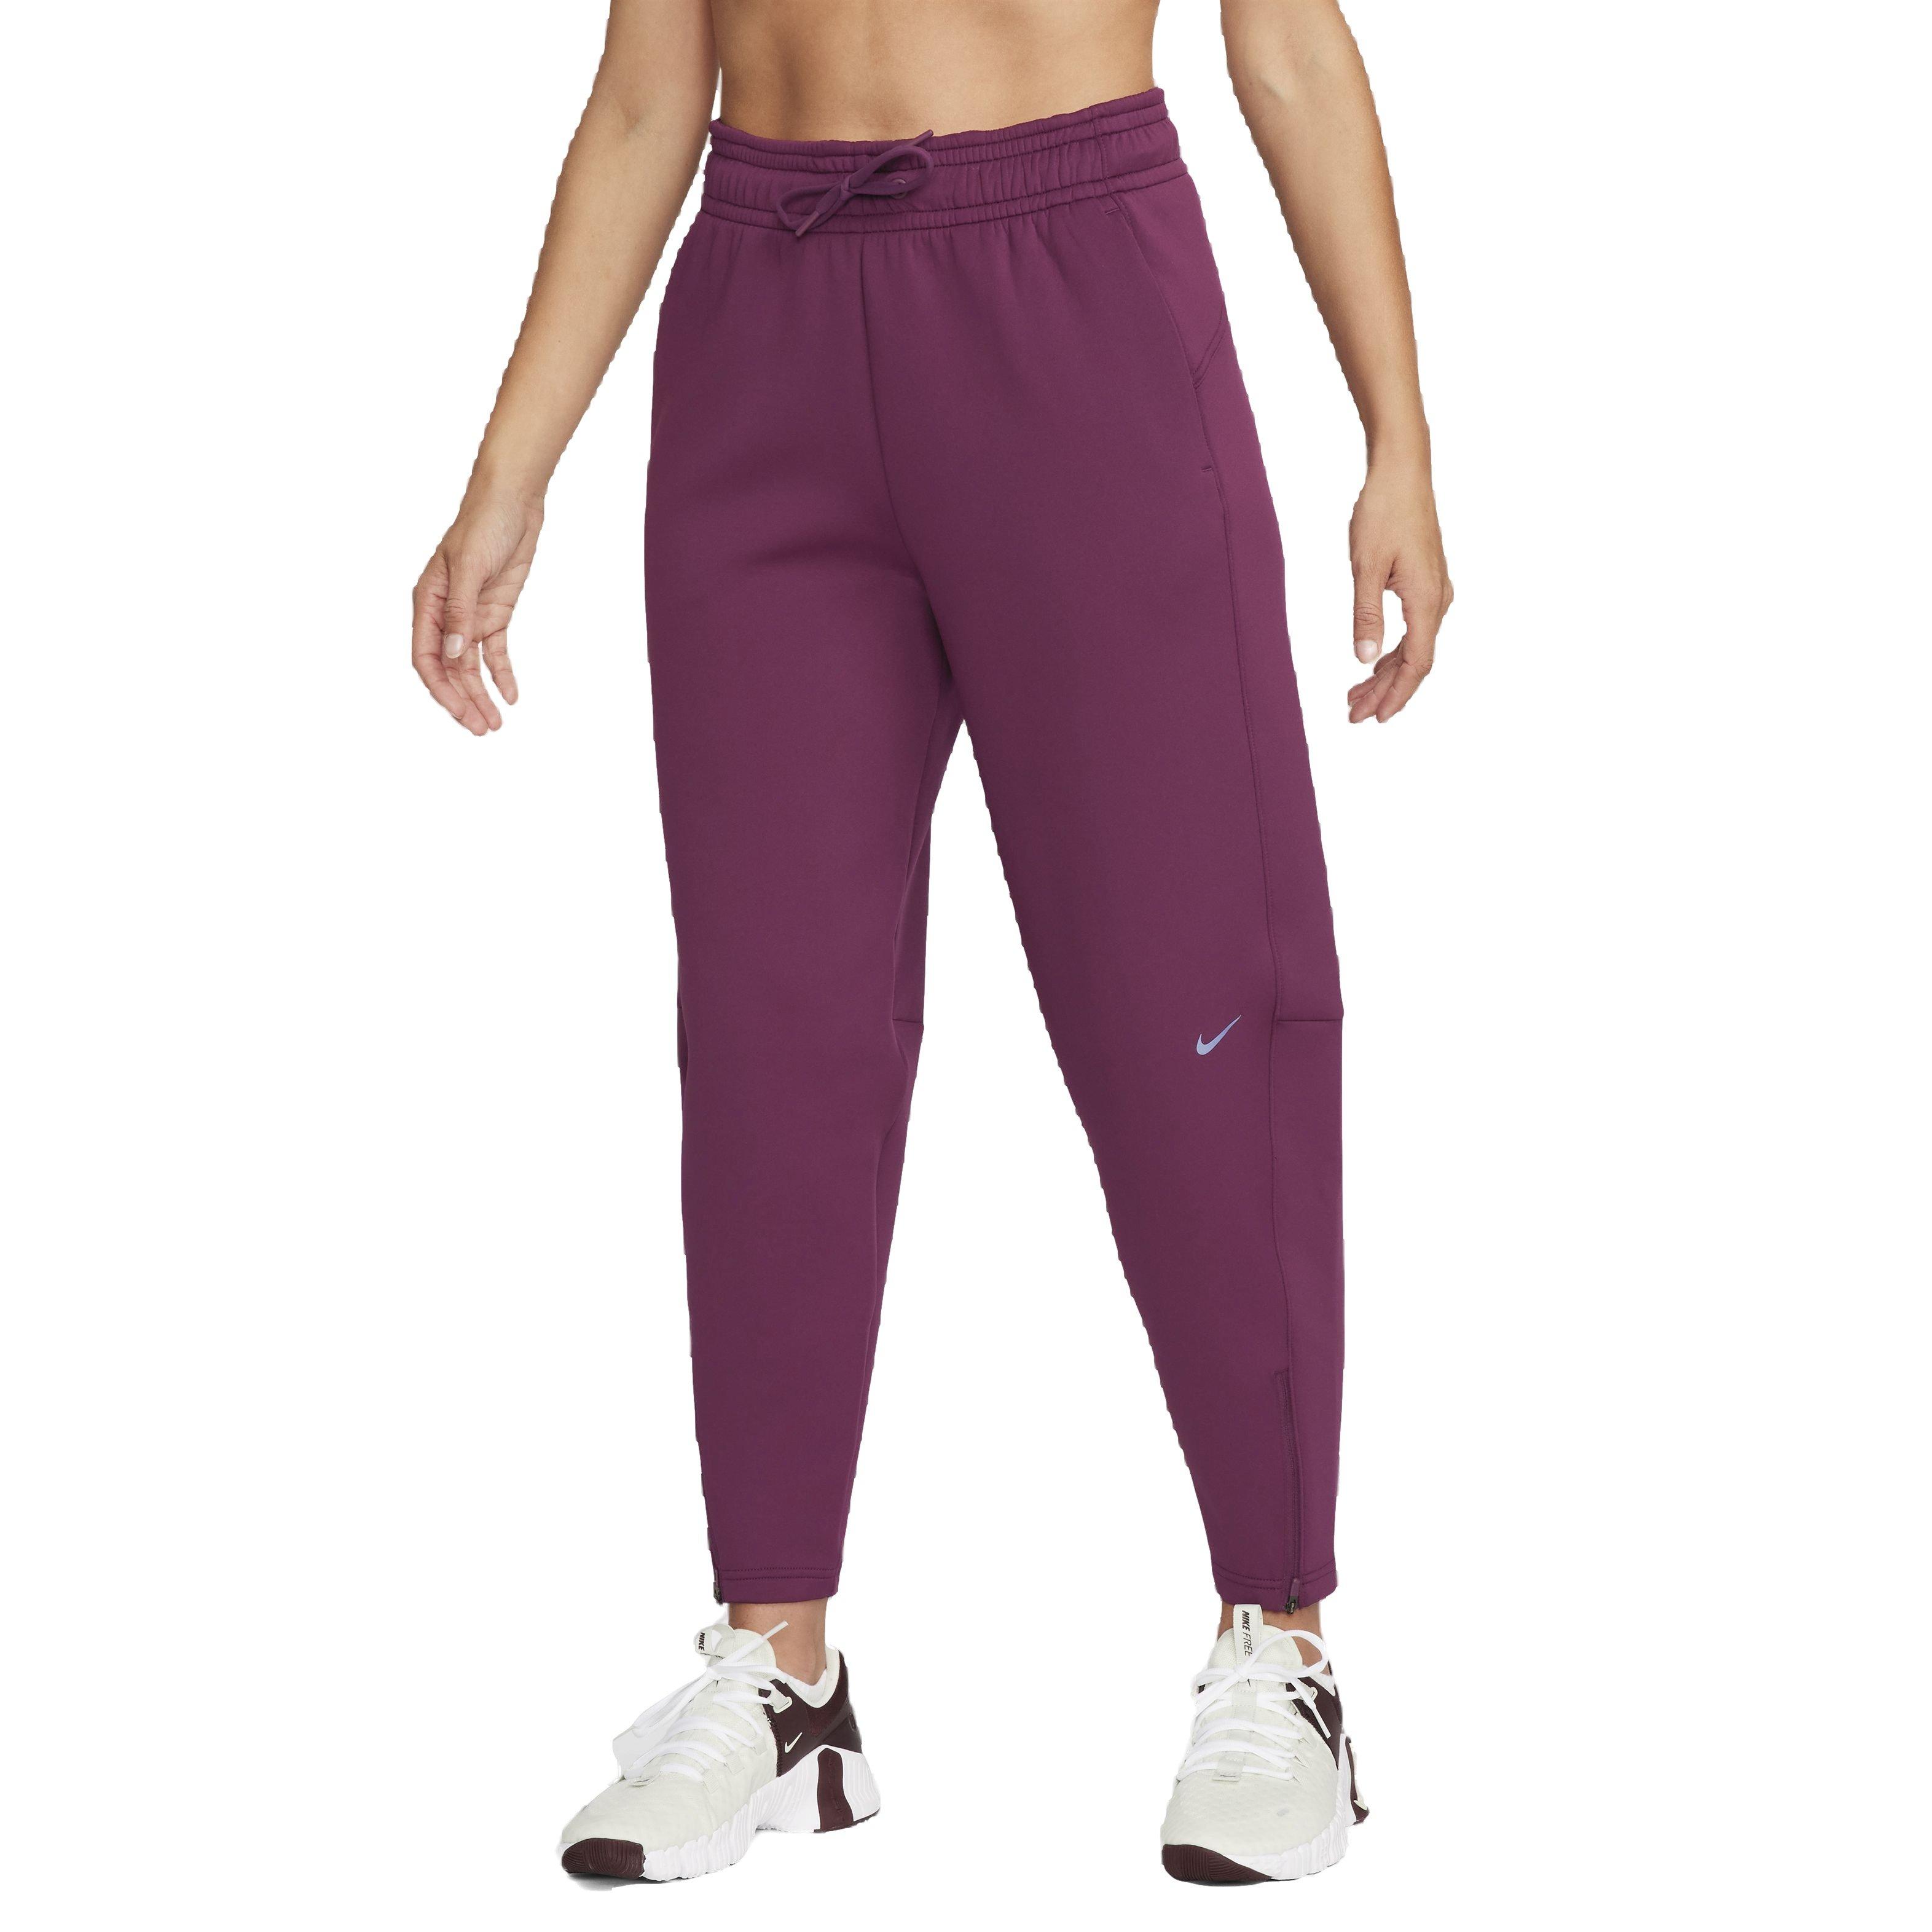 Nike Women's Dri-FIT Prima High-Rise 7/8 Training Pants - Bordeaux -  Hibbett